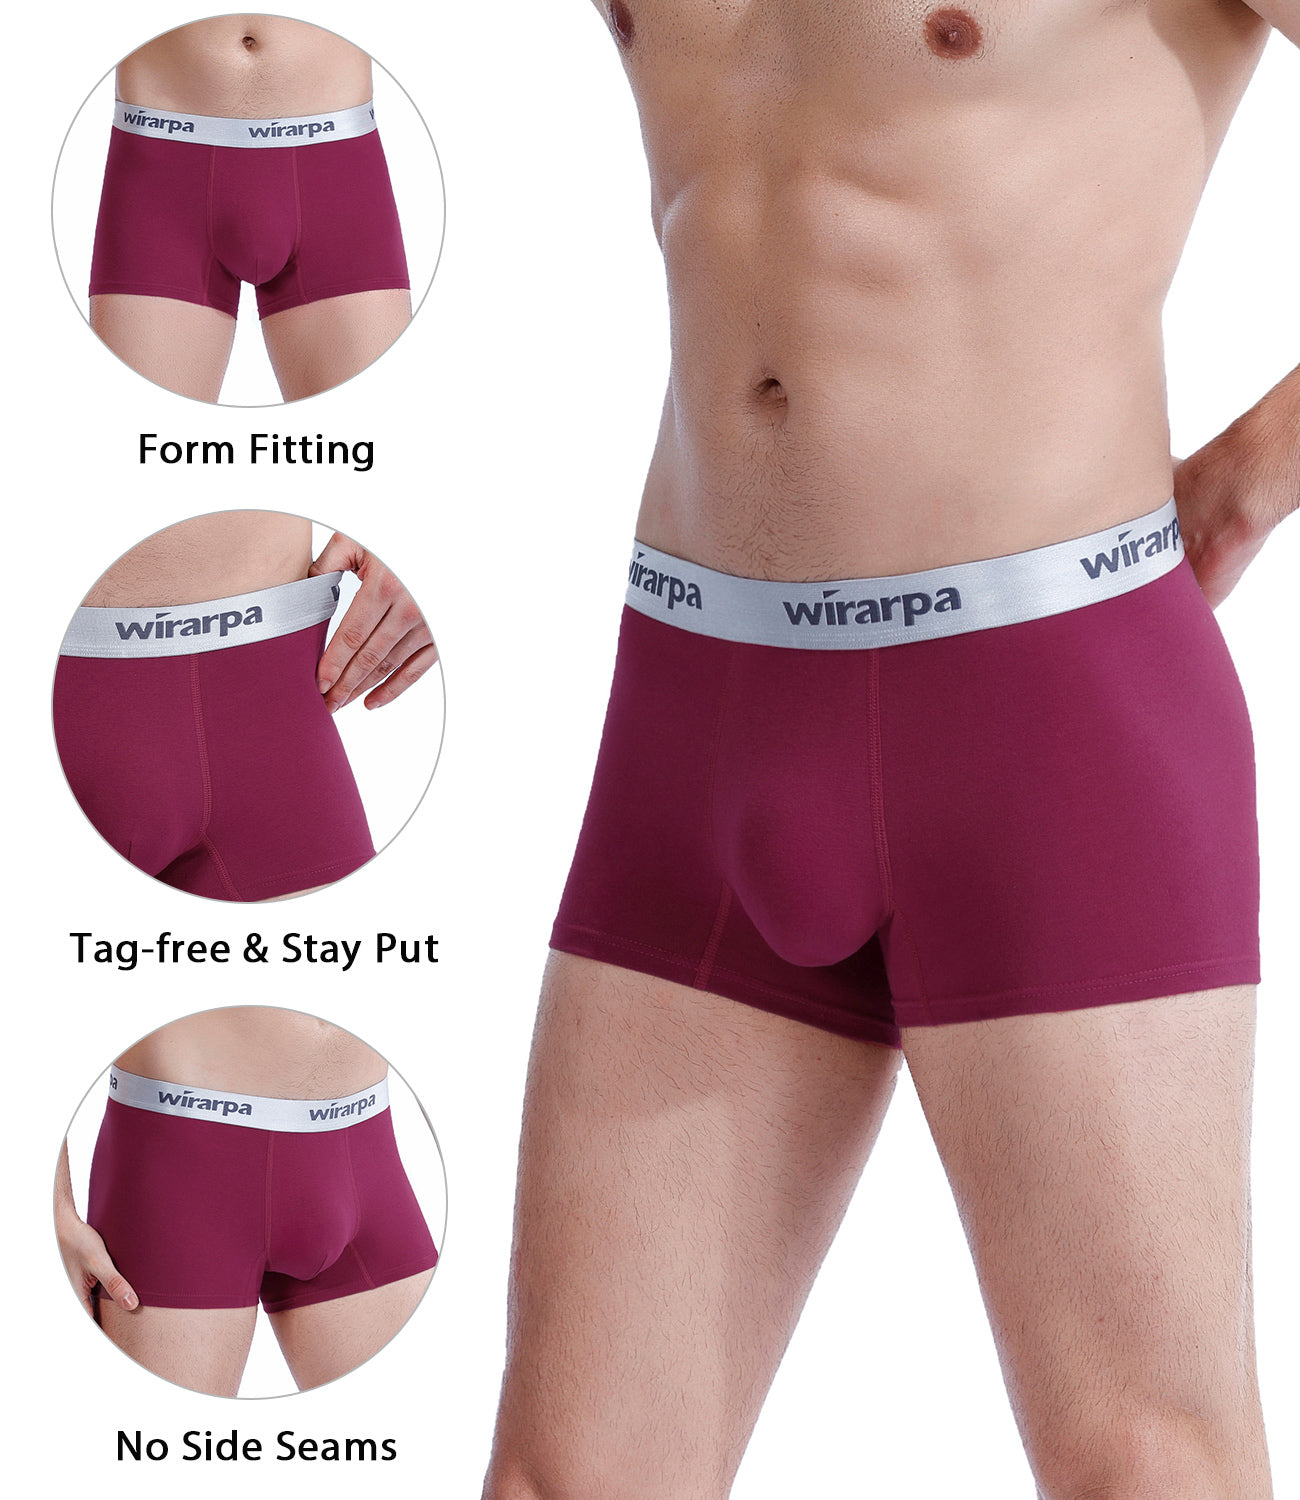  wirarpa Men's Underwear 4 Pack Stretch Modal